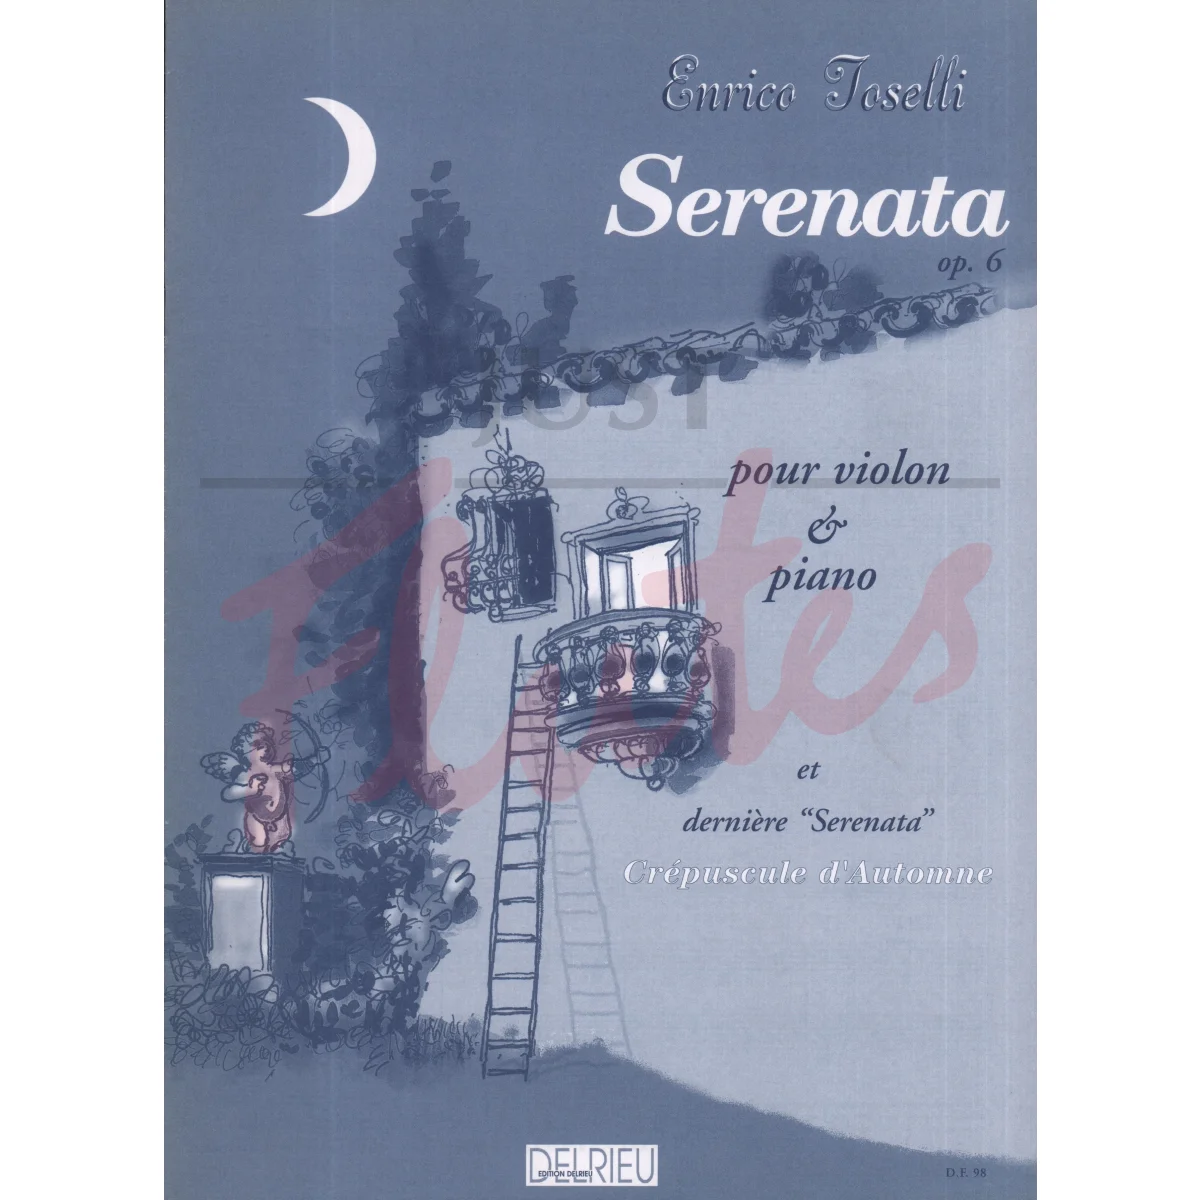 Serenata for Violin and Piano